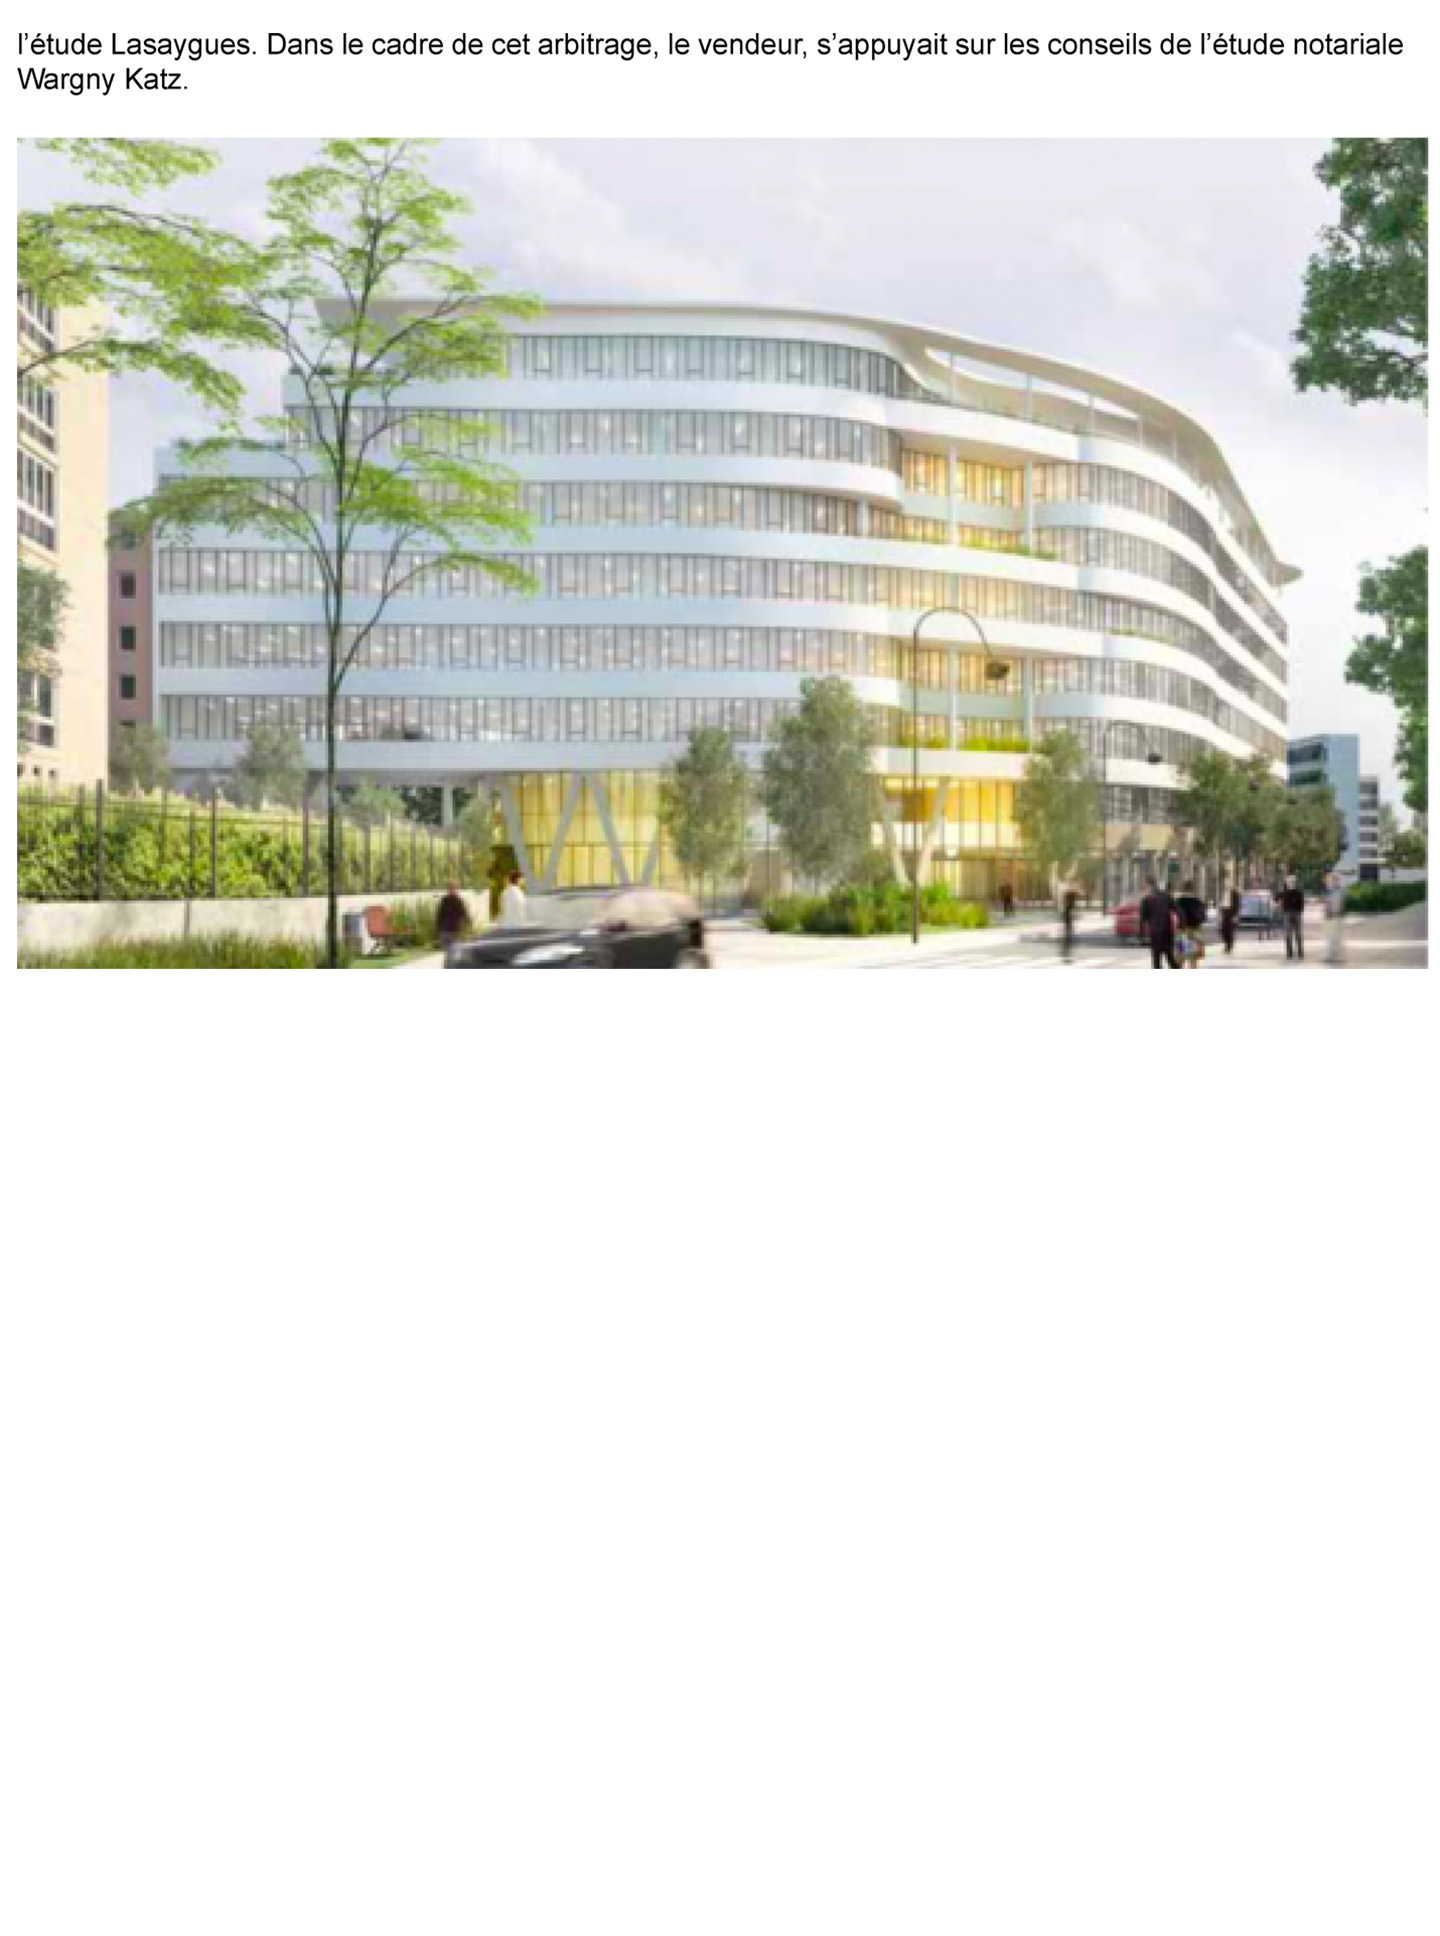 Article sur le nouveau siège social de Danone, les bureaux Danone désignés par le studio d'architecture d'intérieur Jean-Philippe Nuel